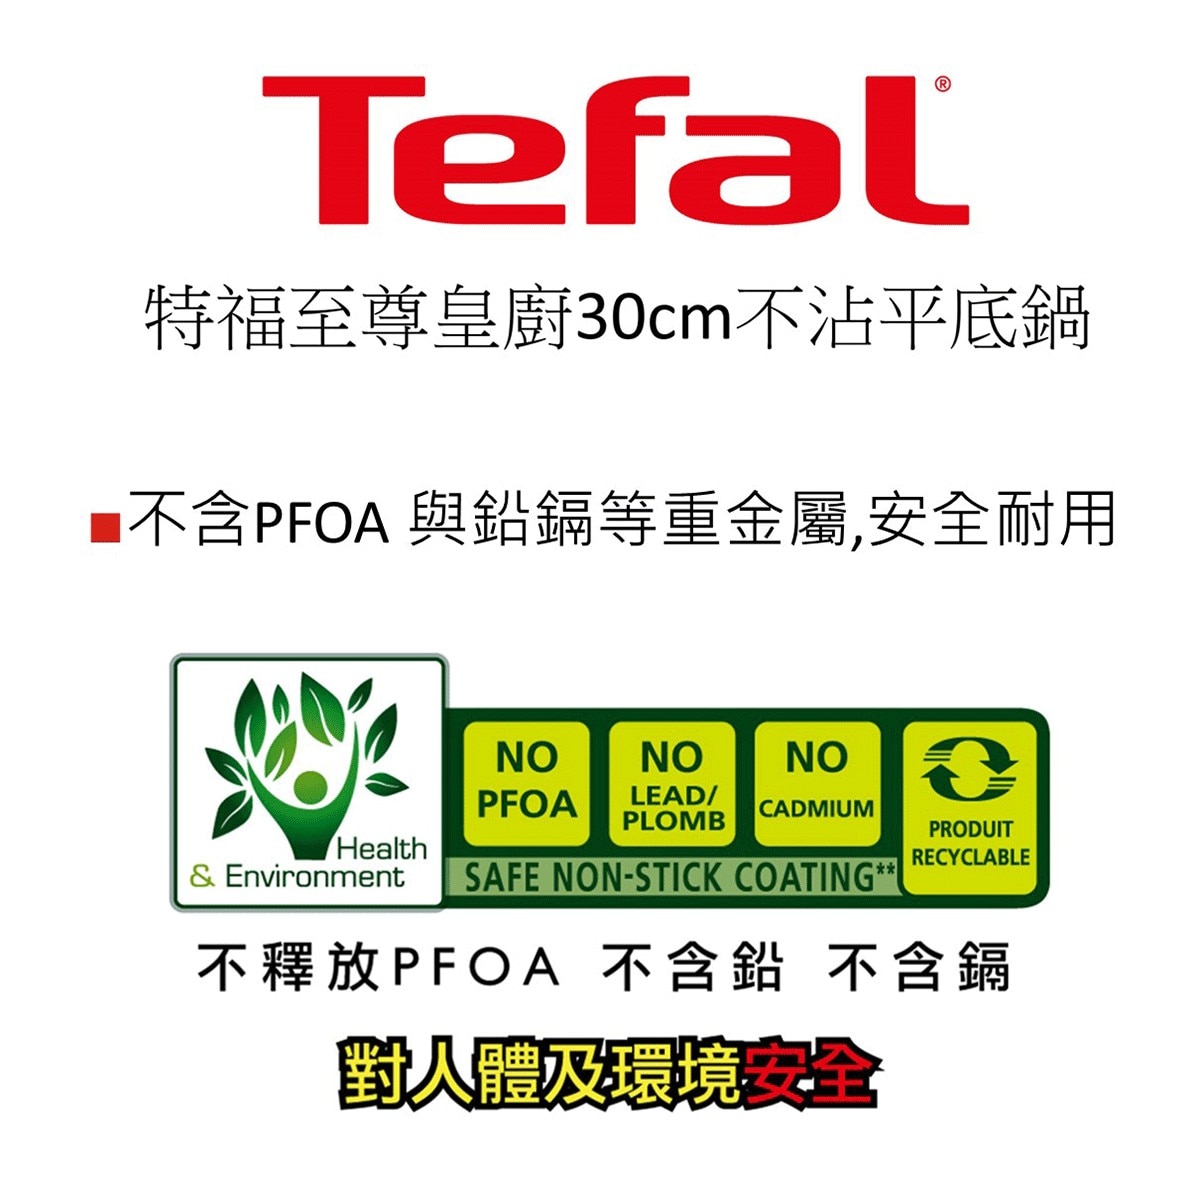 Tefal 法國特福至尊皇廚系列30公分不沾平底鍋含蓋，多國檢驗測試，保證不含PFOA，對人體及環境安全。